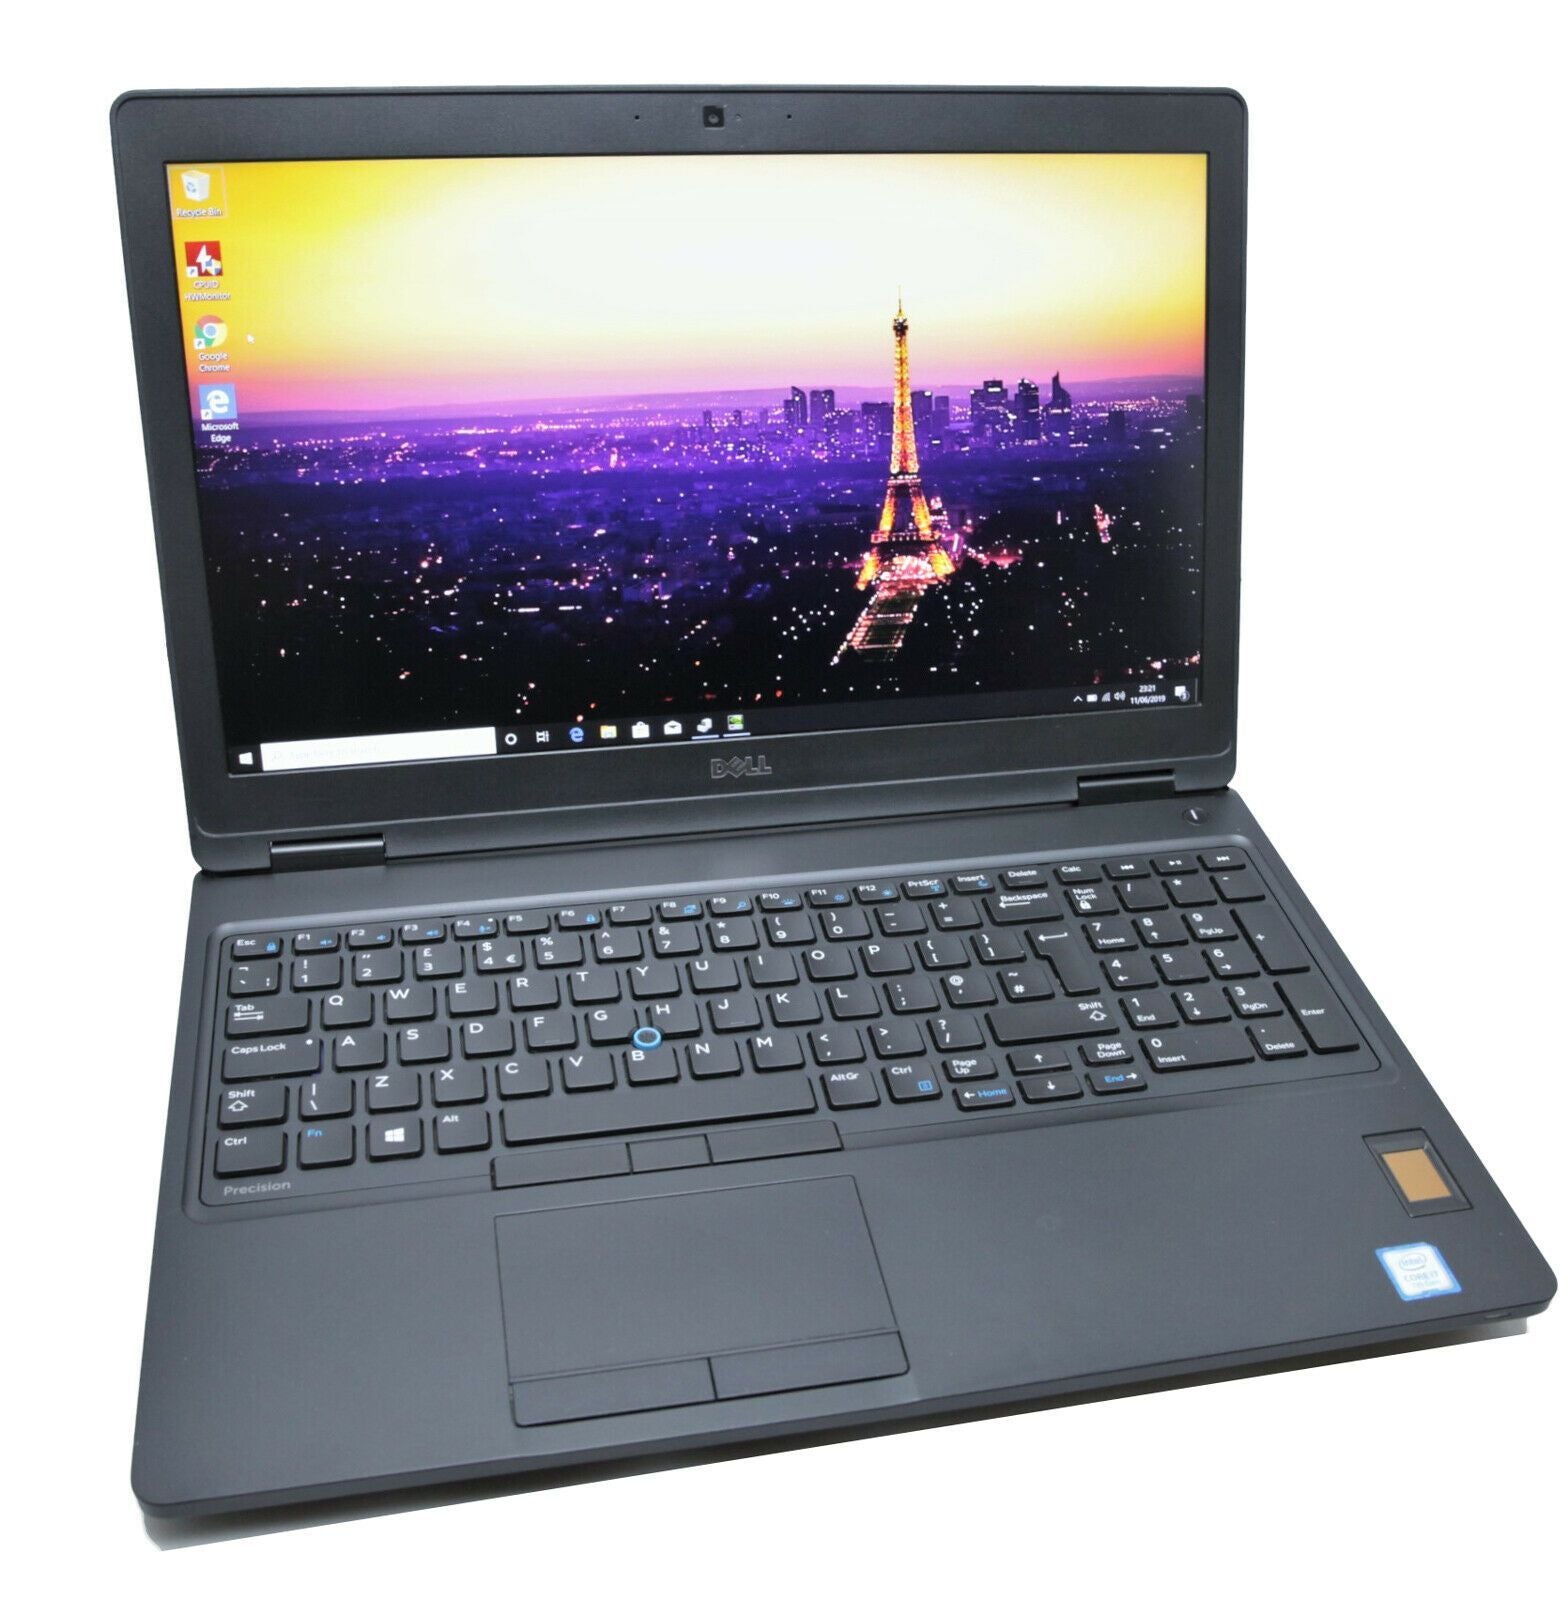 Dell Precision 3520 CAD Laptop: Core i7-7700HQ, Quadro M620, 128GB SSD, 8GB RAM - CruiseTech